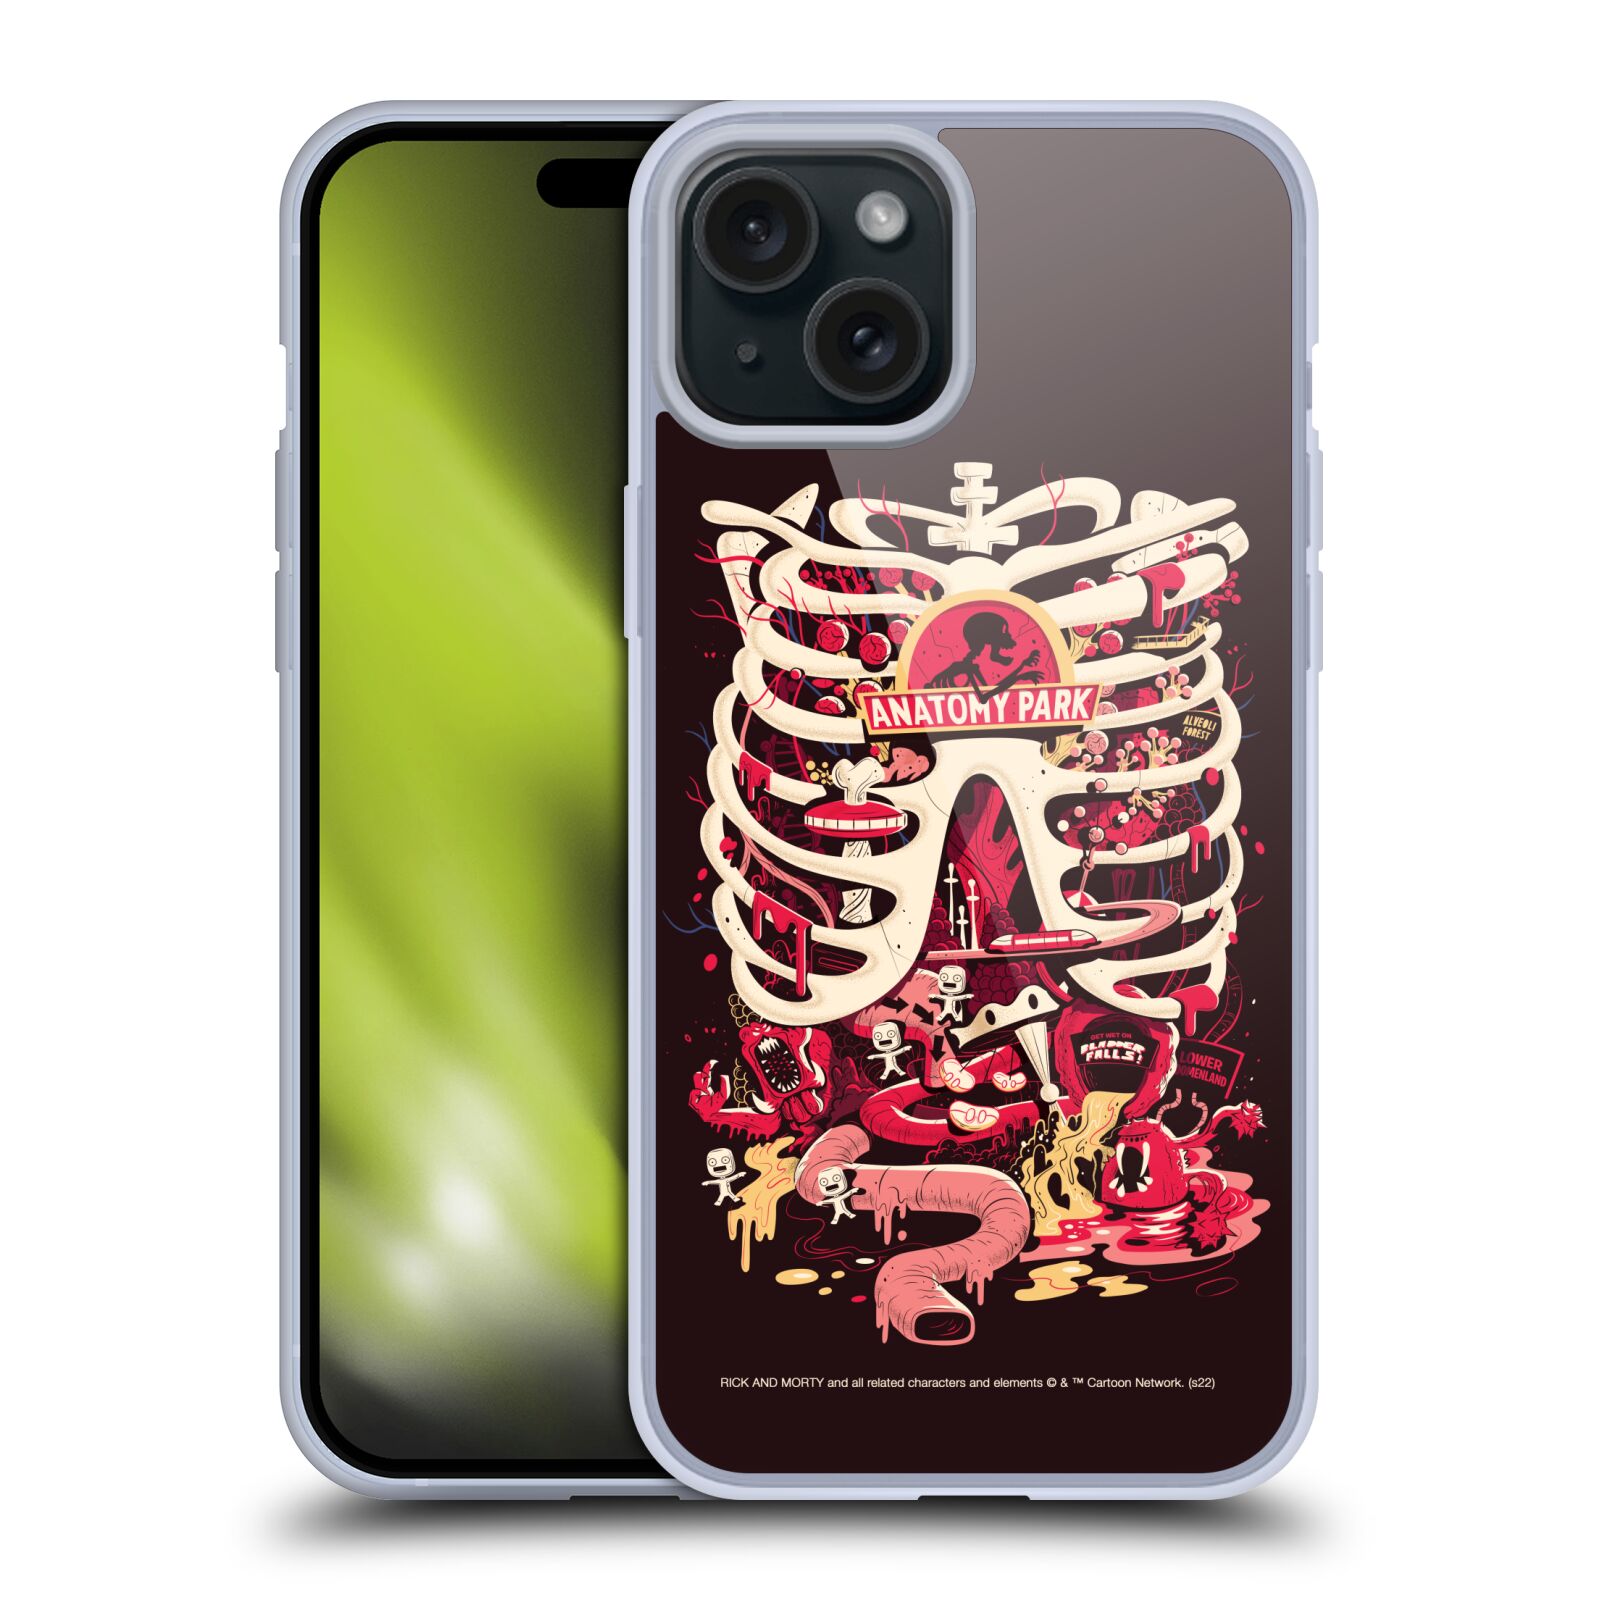 Silikonové lesklé pouzdro na mobil Apple iPhone 15 Plus - Rick And Morty - Anatomy Park (Silikonový lesklý kryt, obal, pouzdro na mobilní telefon Apple iPhone 15 Plus s licencovaným motivem Rick And Morty - Anatomy Park)